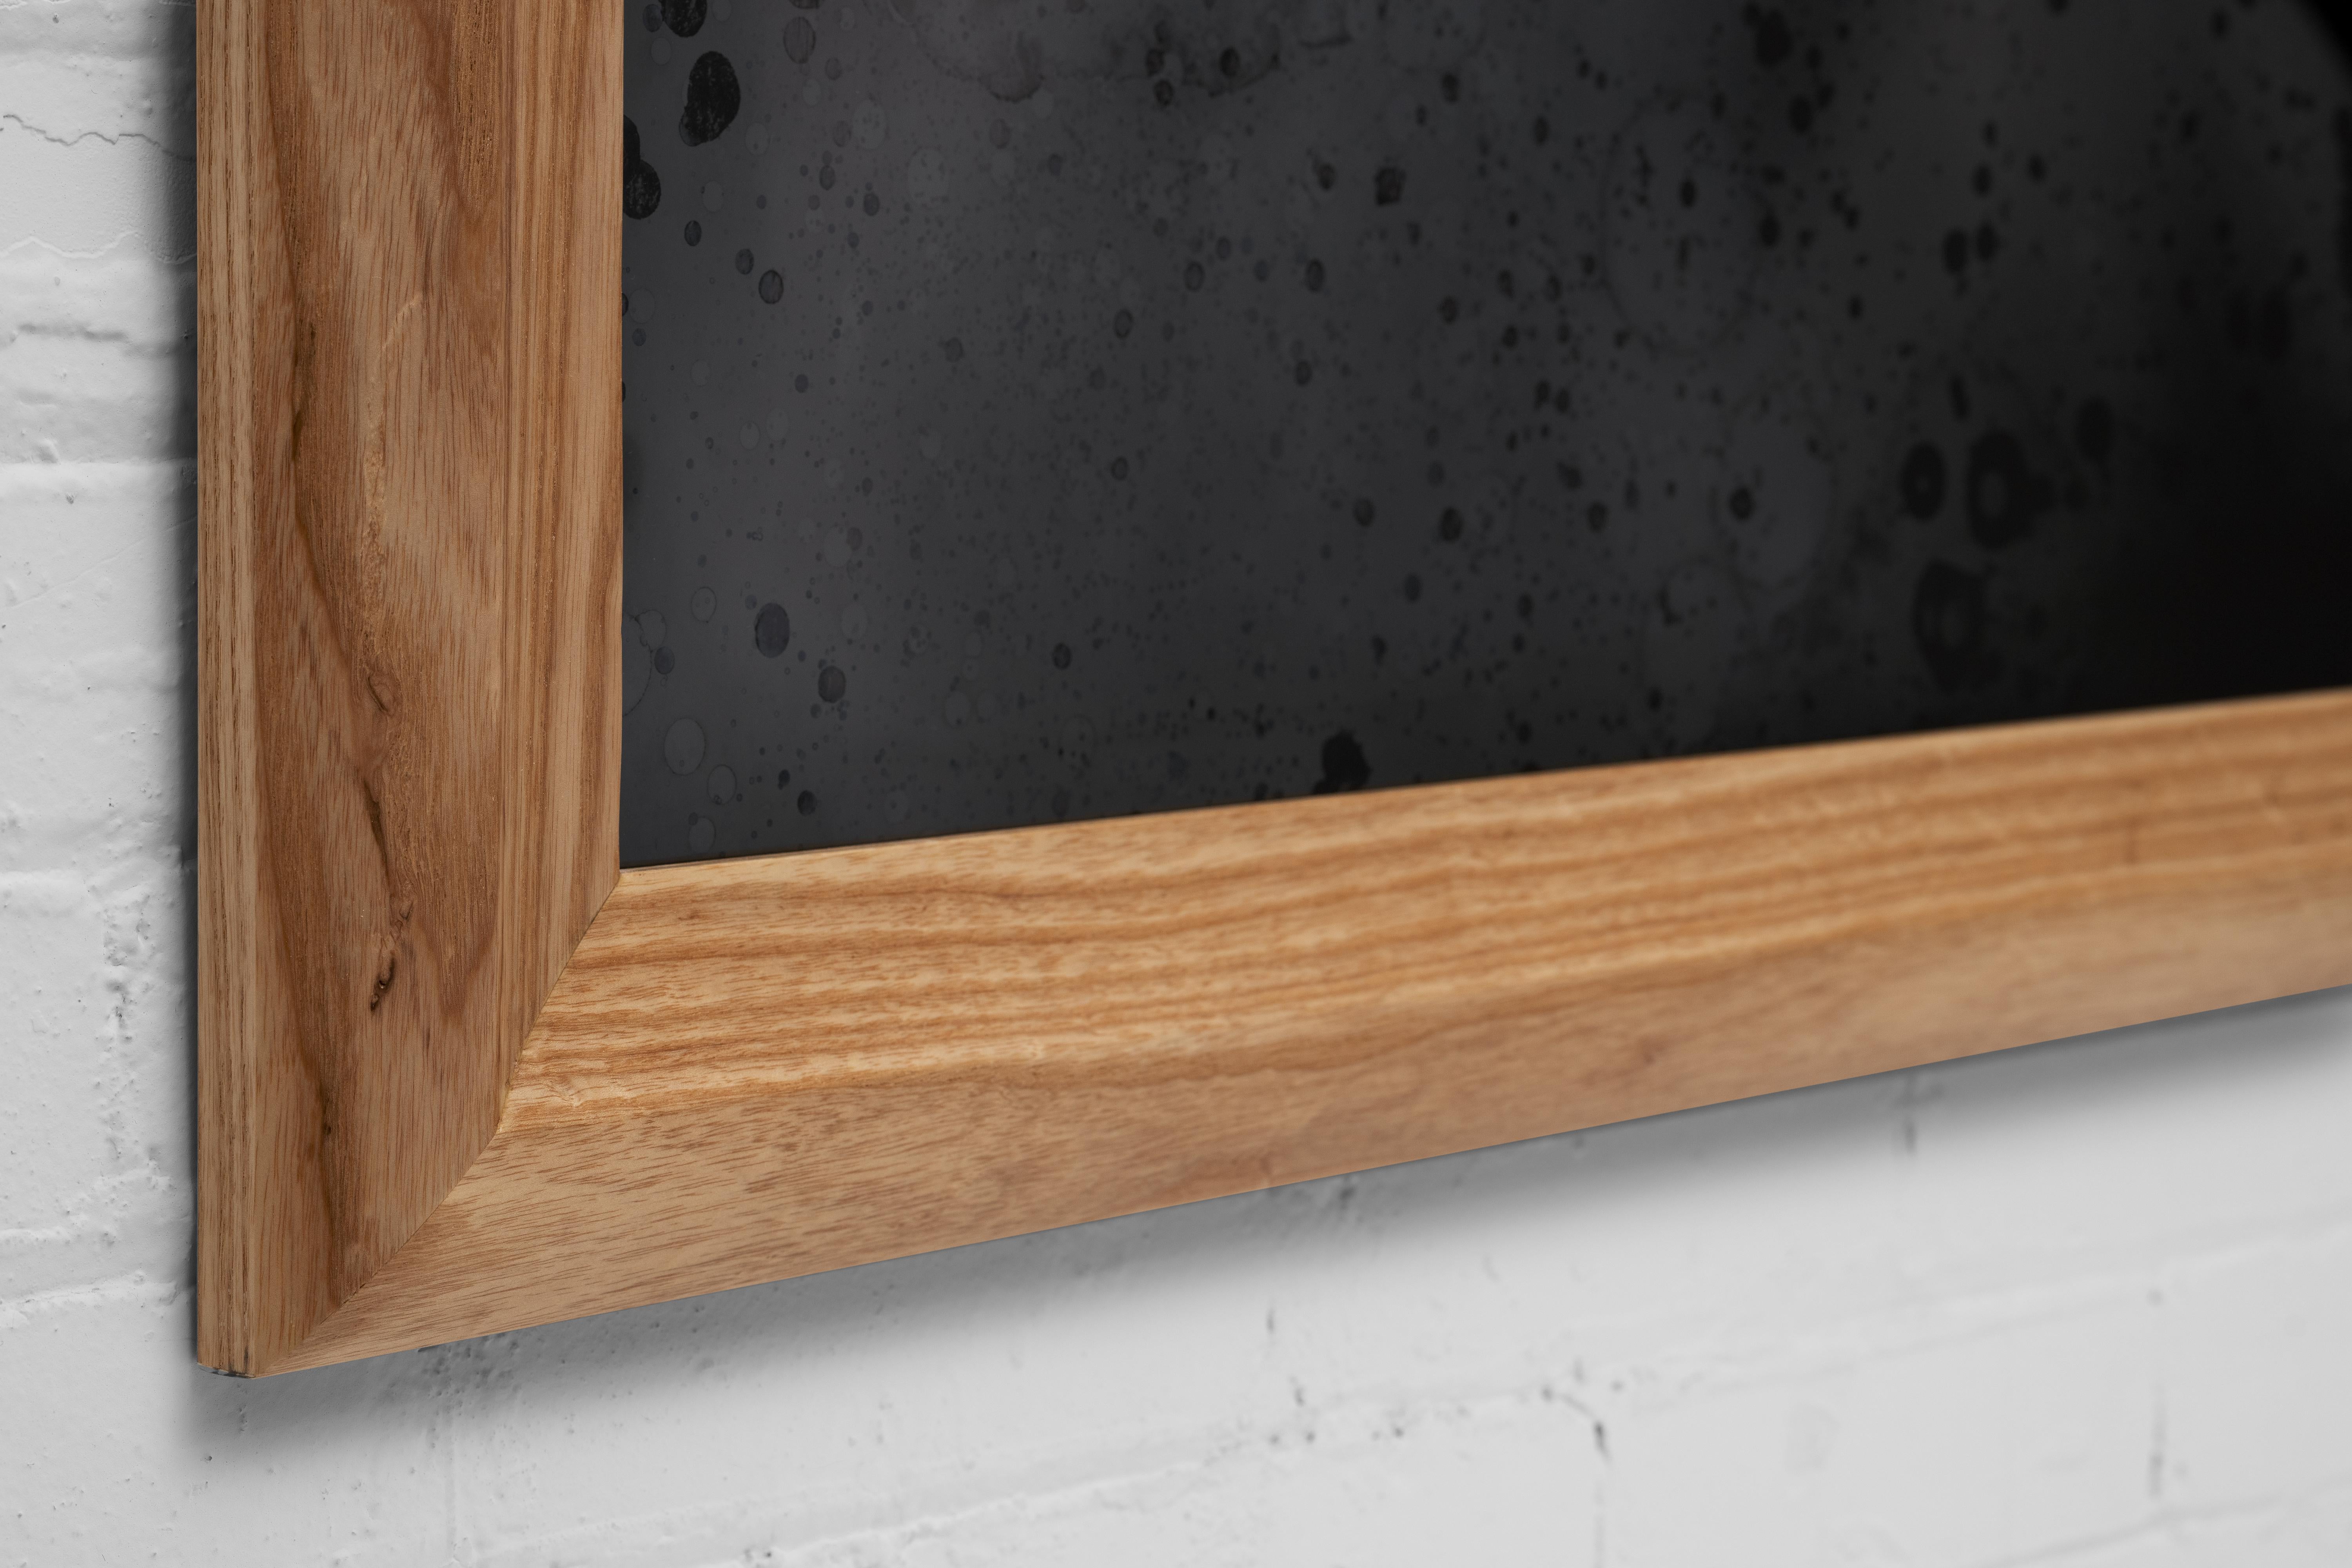 Les formes douces et ondulées de ce cadre en bois massif attirent le regard sur un miroir Scathain.

Tous nos miroirs sont fabriqués sur mesure et uniques en leur genre. Notre procédé unique de miroiterie permet d'obtenir des miroirs fantastiques,